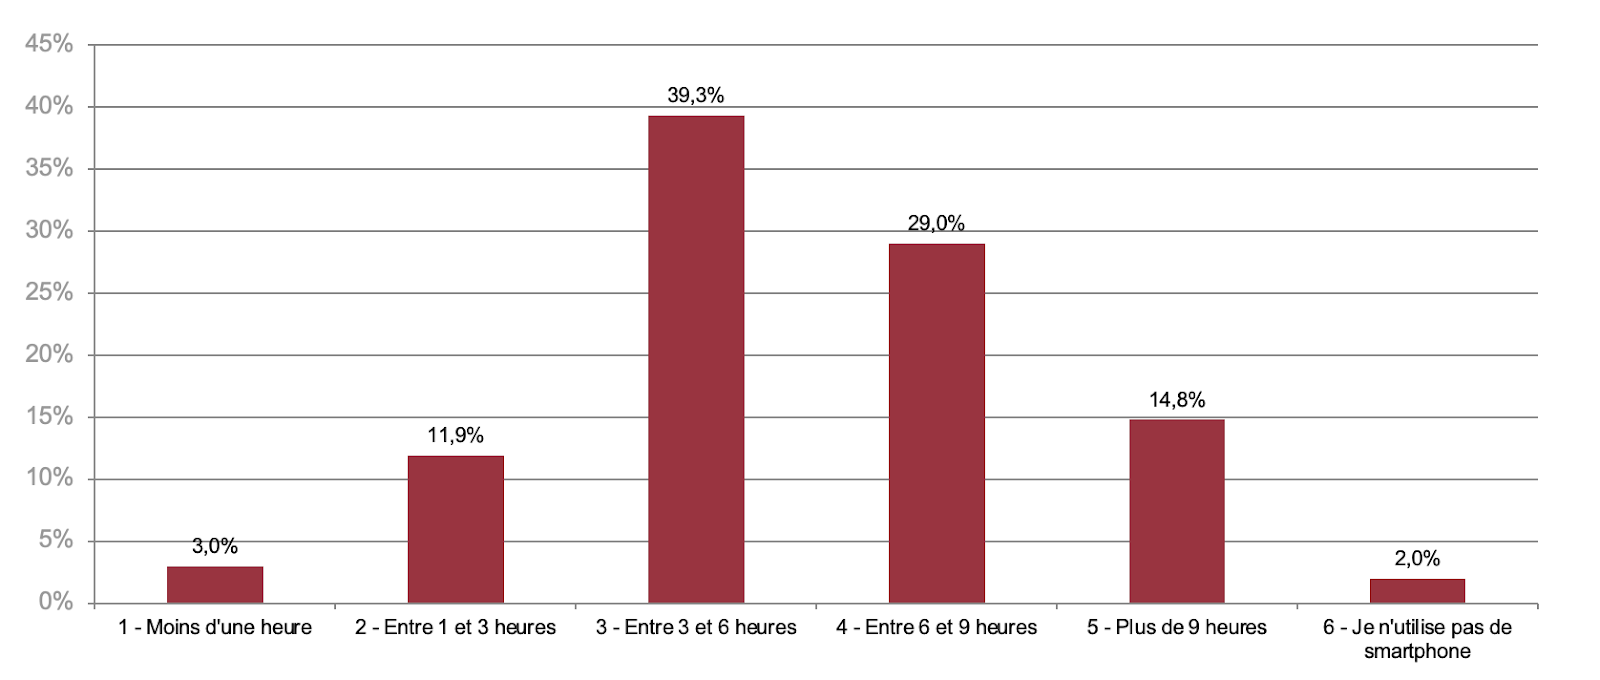    En moyenne, combien d'heures passez-vous sur votre smartphone par jour (pour votre usage personnel) ?